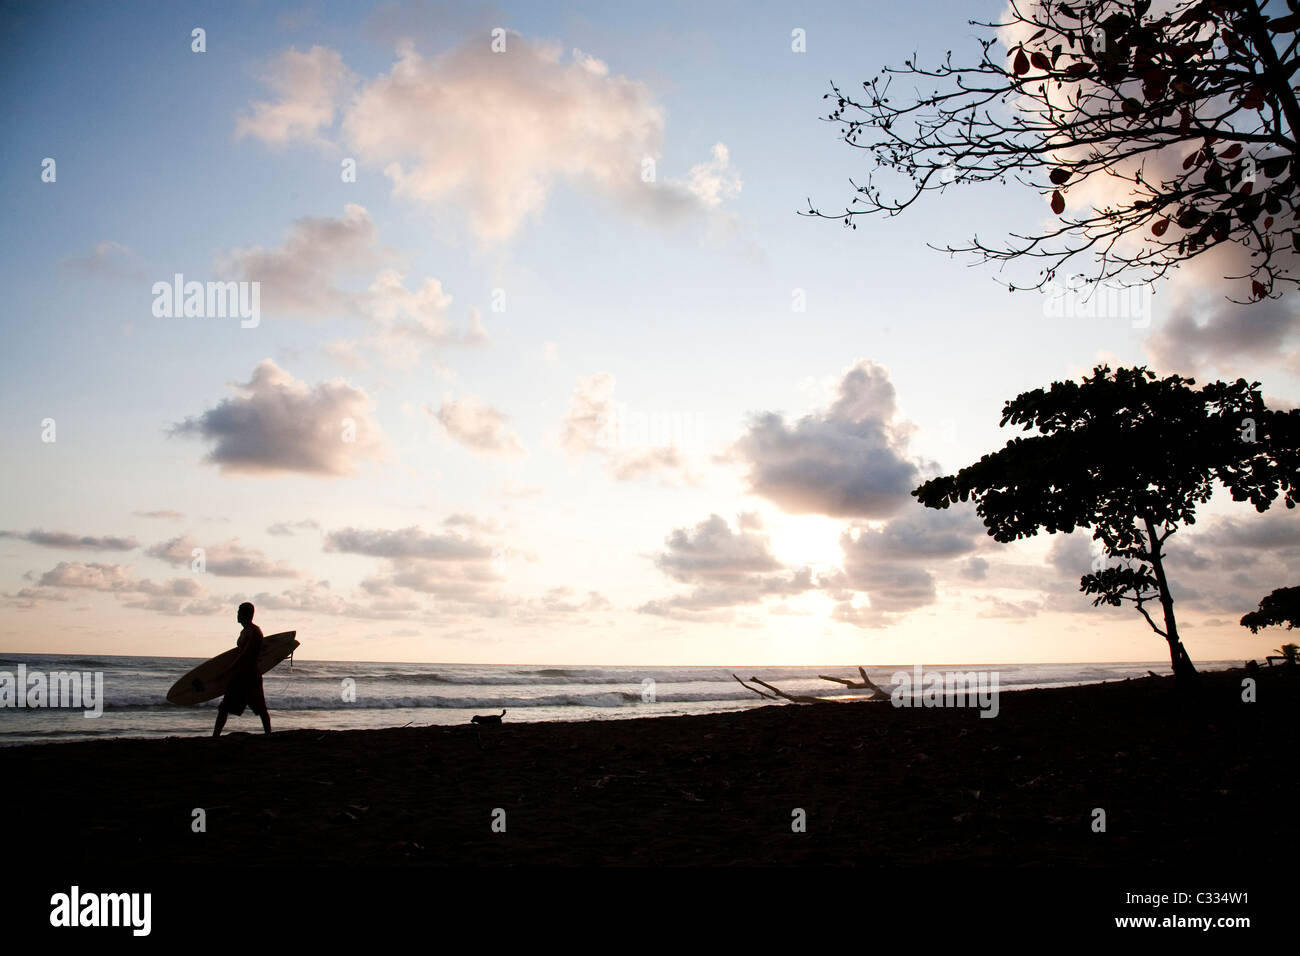 Eine Silhouette Bild eines Mannes geht unten am Strand, gefolgt von einem Hund den Sonnenuntergang hinter ihnen. Stockfoto